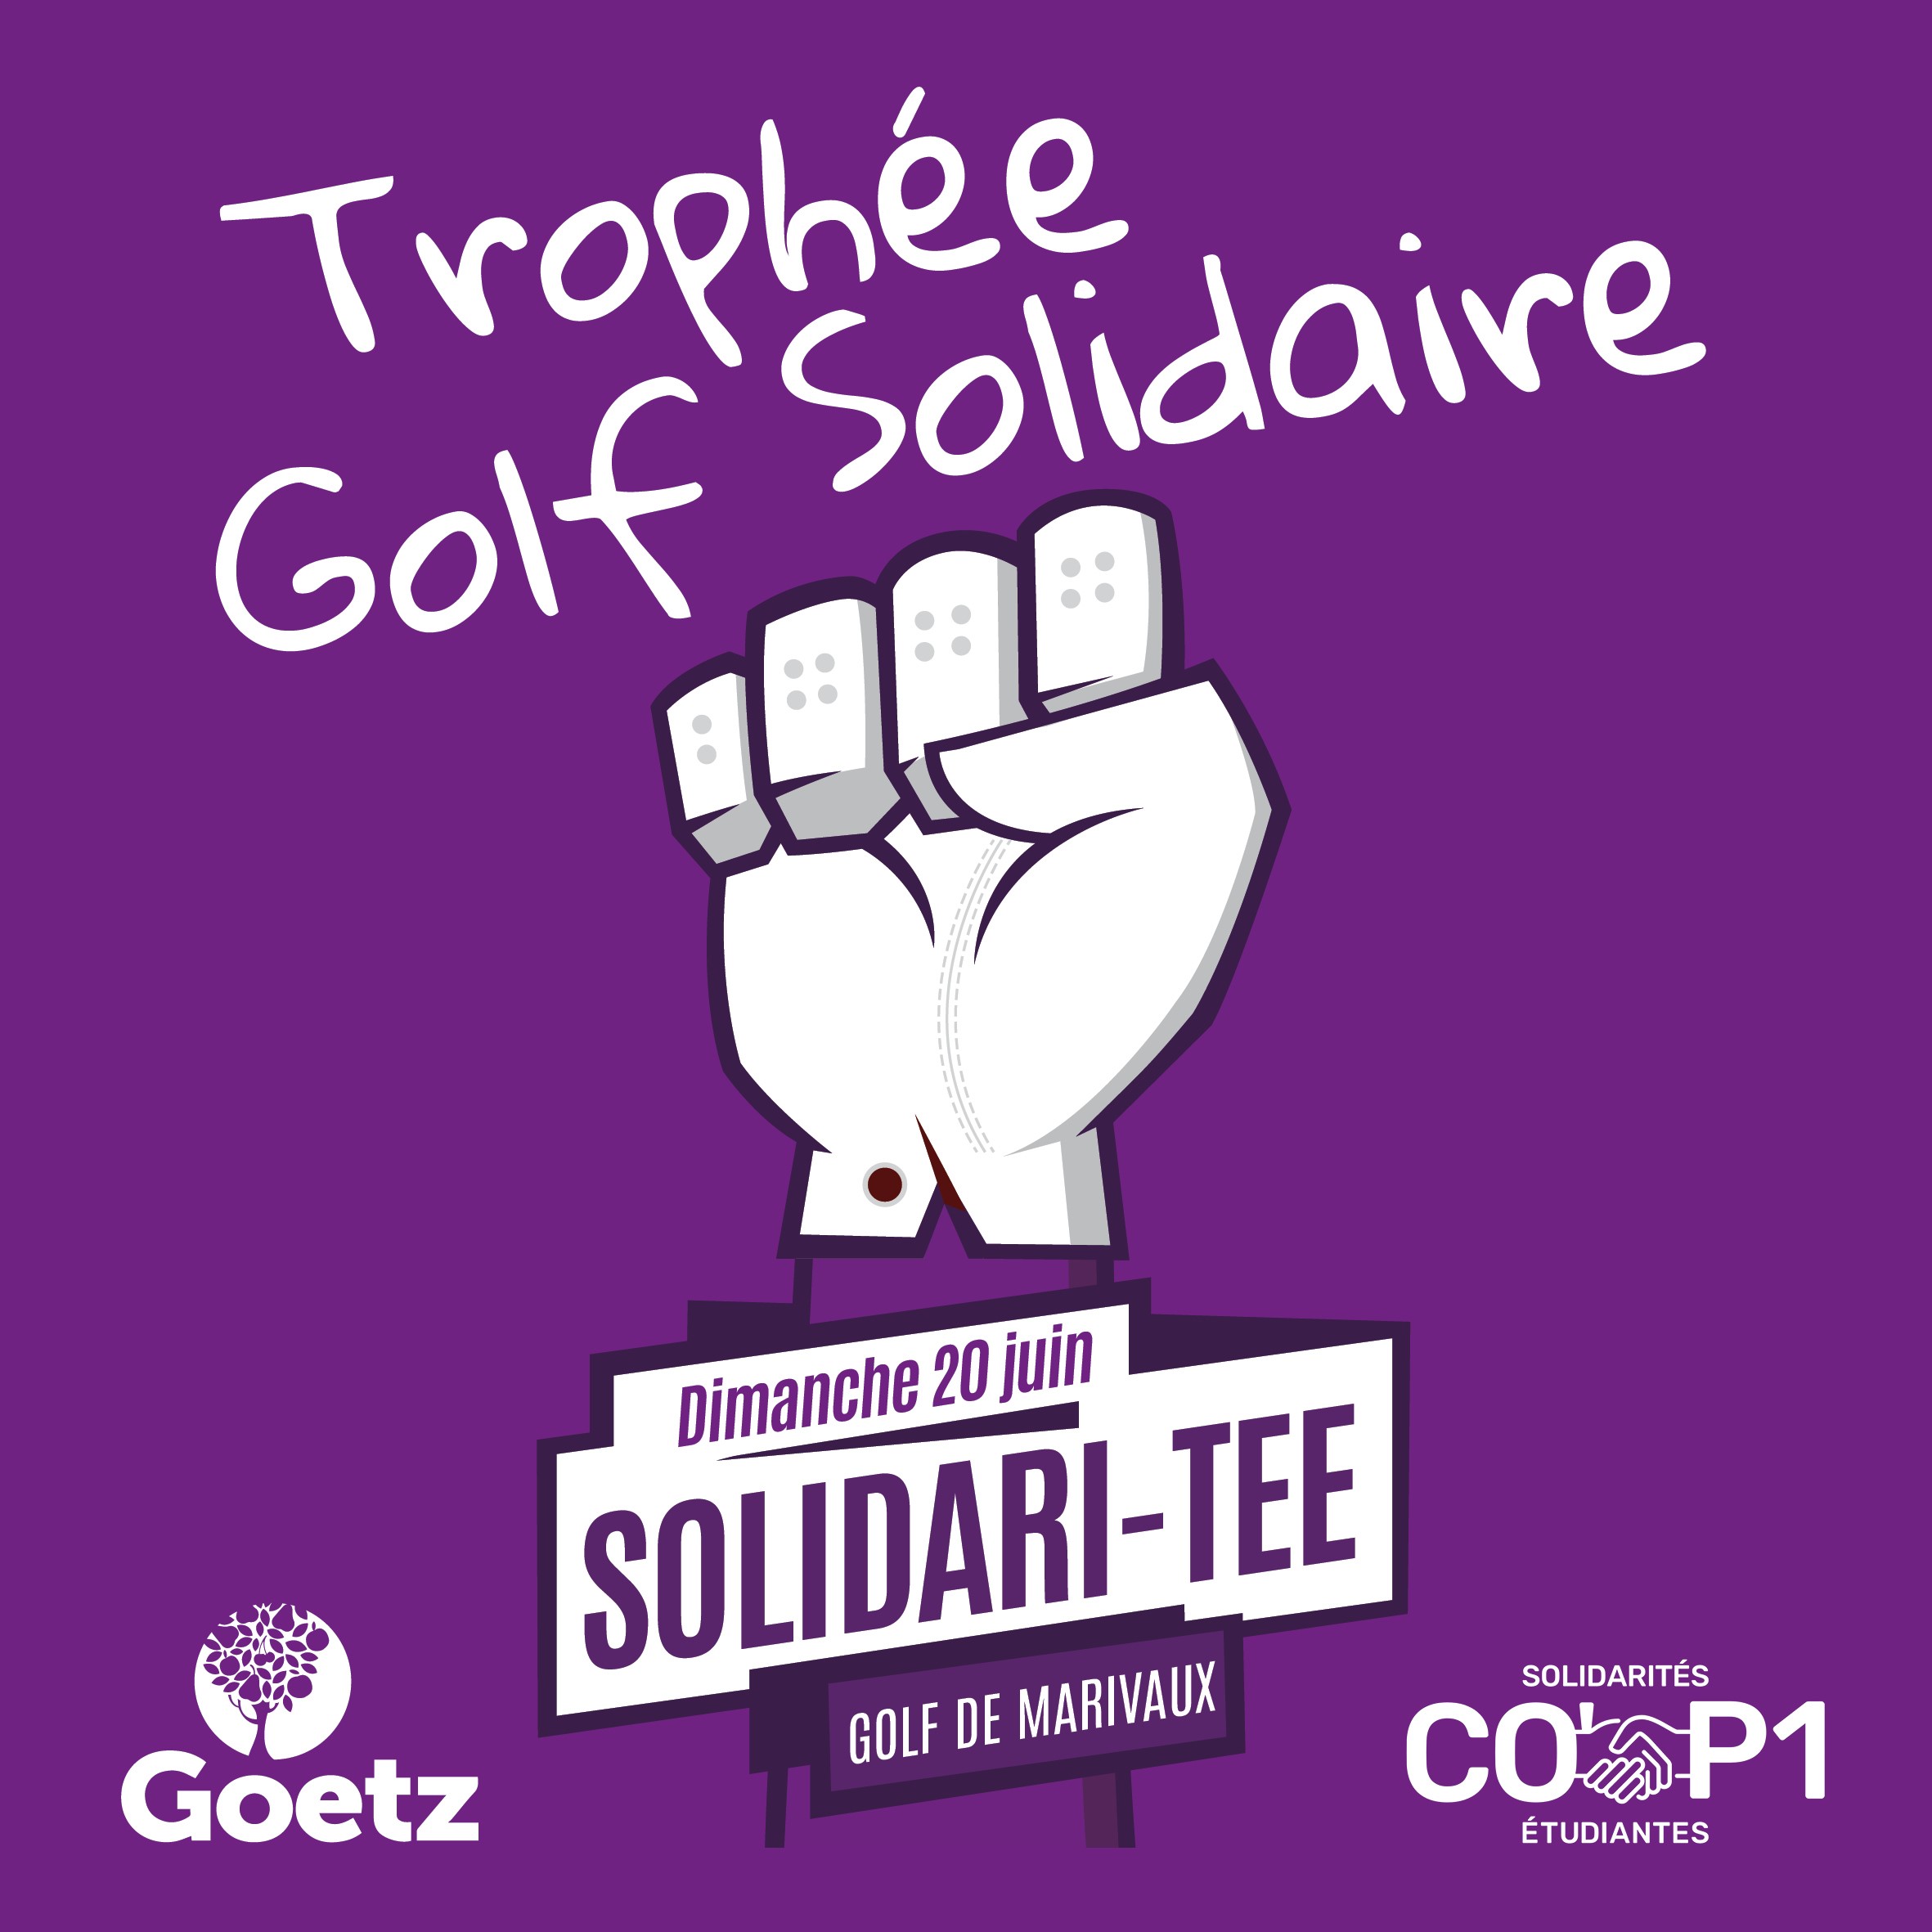 Trophée Golf Solidaire